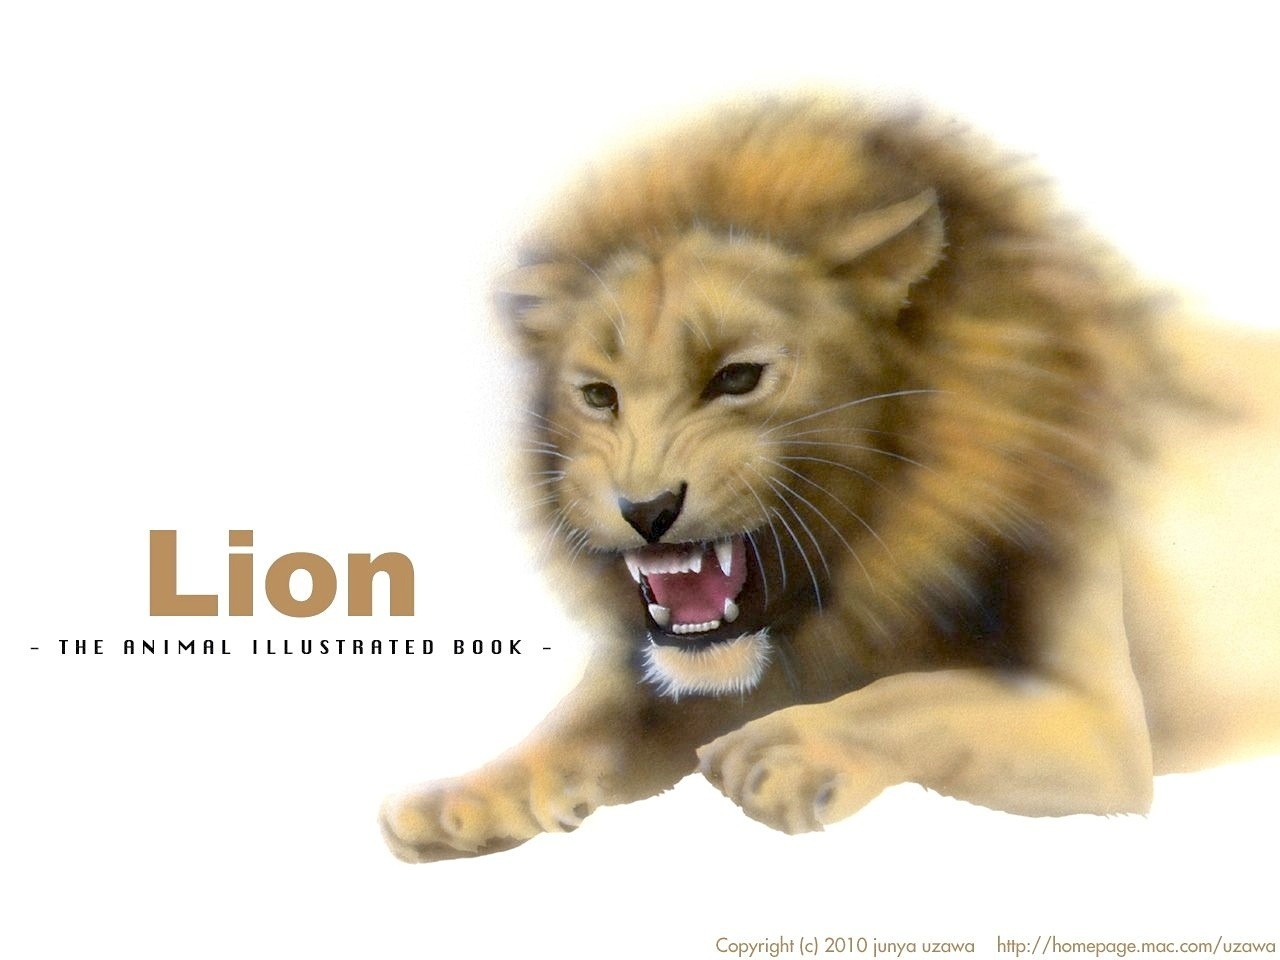 リアリズム絵画 動物の絵 動物イラスト ライオン 吠えるライオン